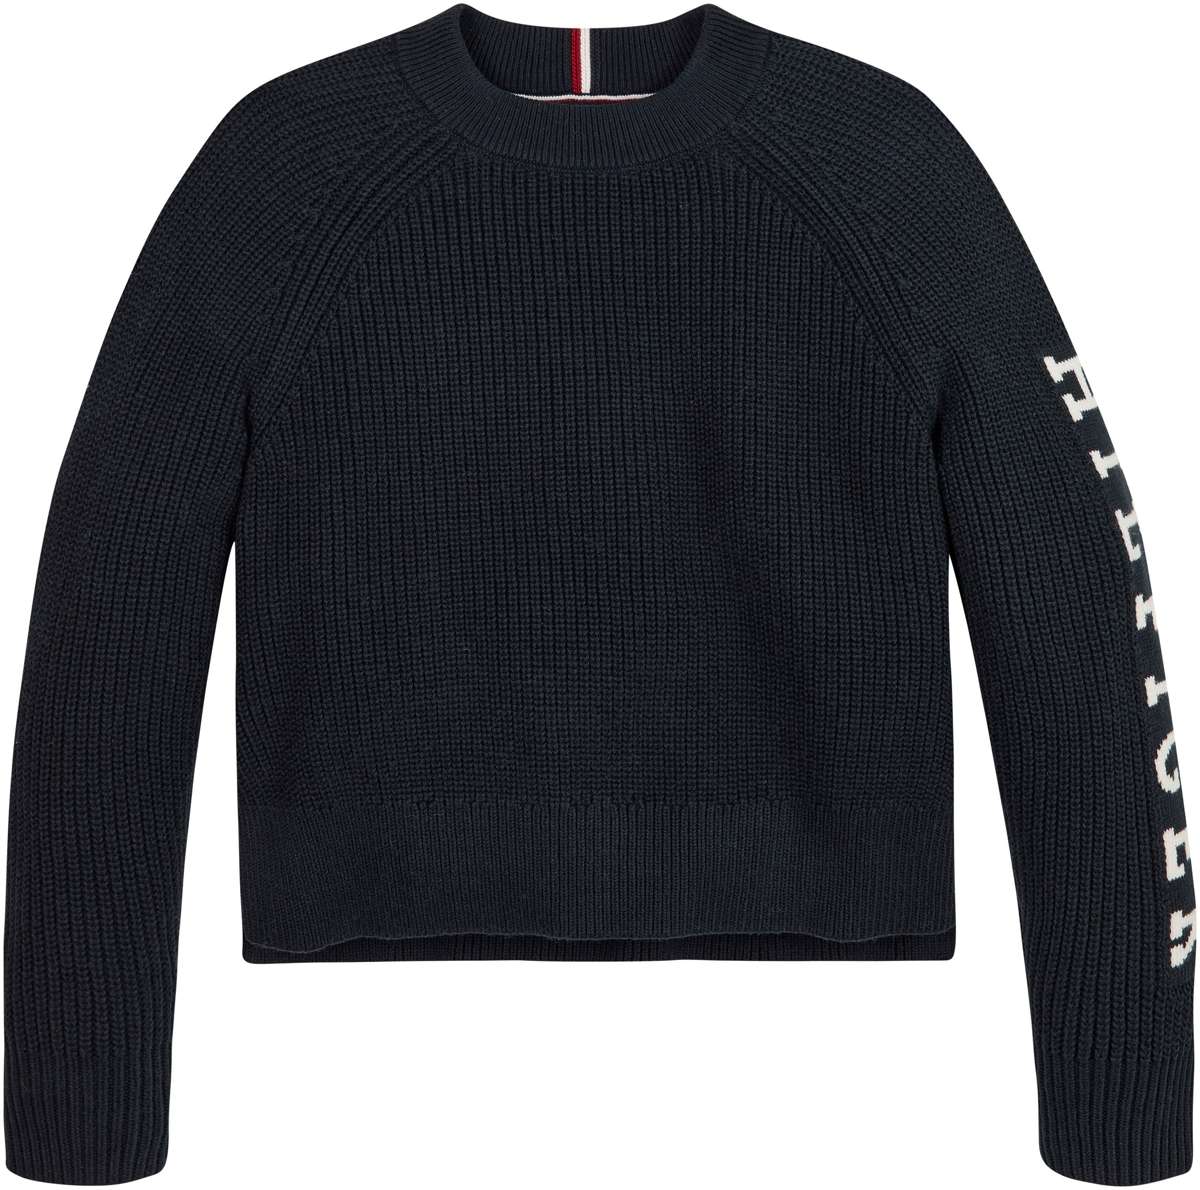 Вязаный свитер с надписью-логотипом на рукаве.